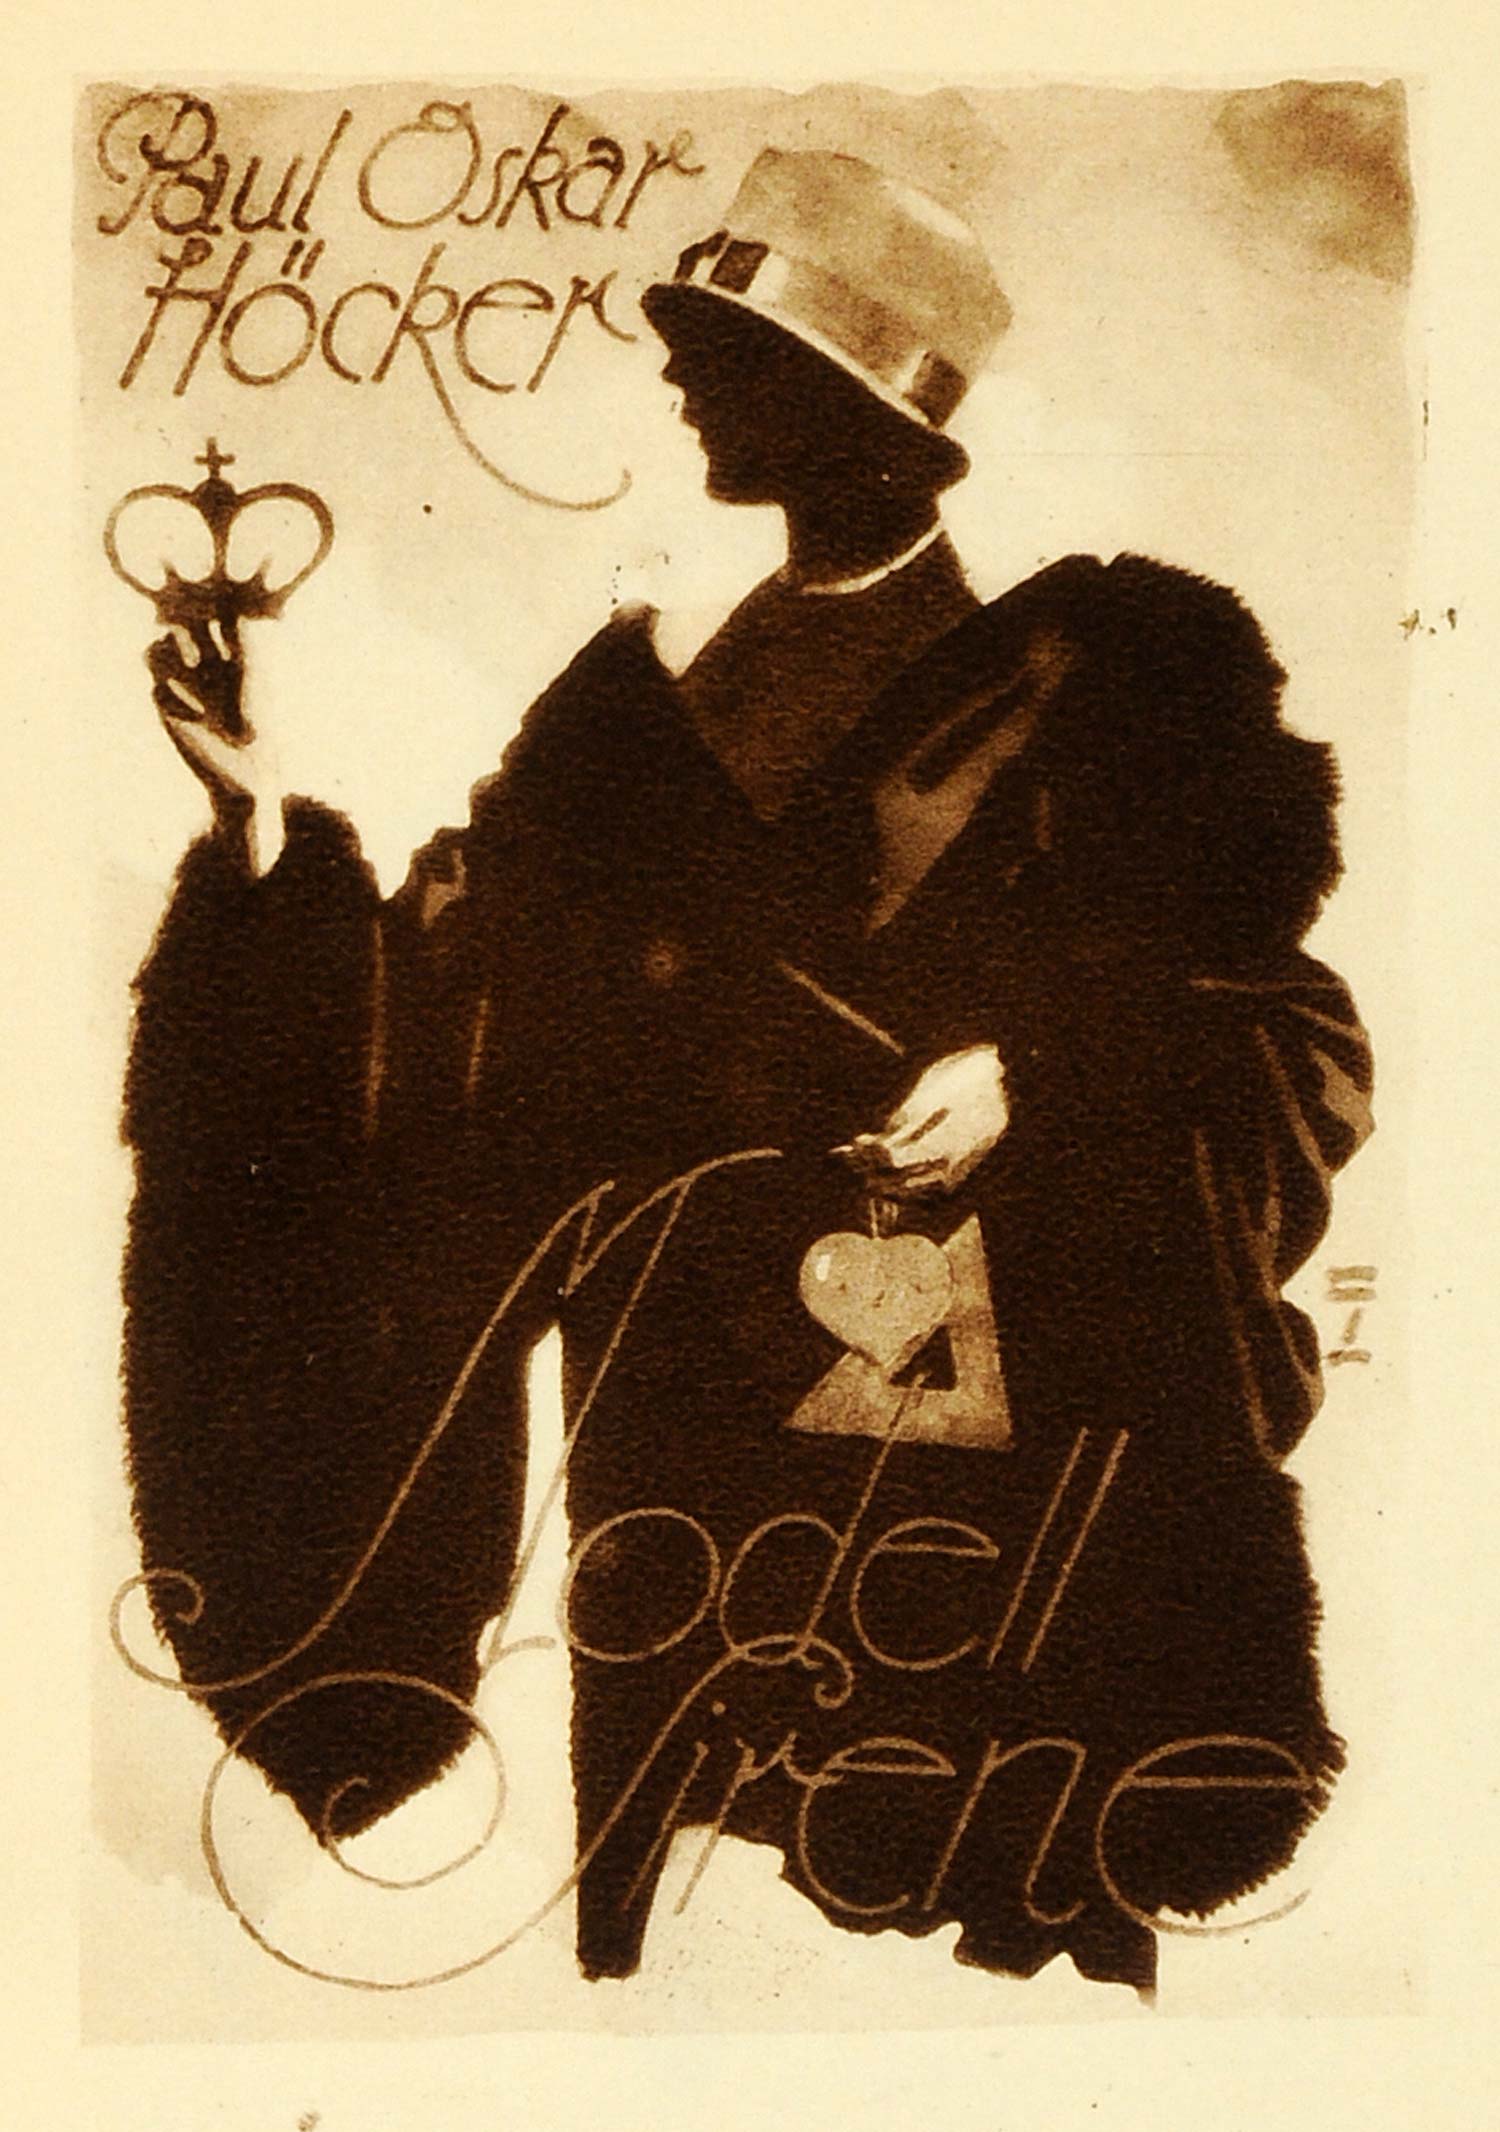 1926 Photogravure Hohlwein Paul Oskar Hocker Modell Sirene Book Cover Art Design